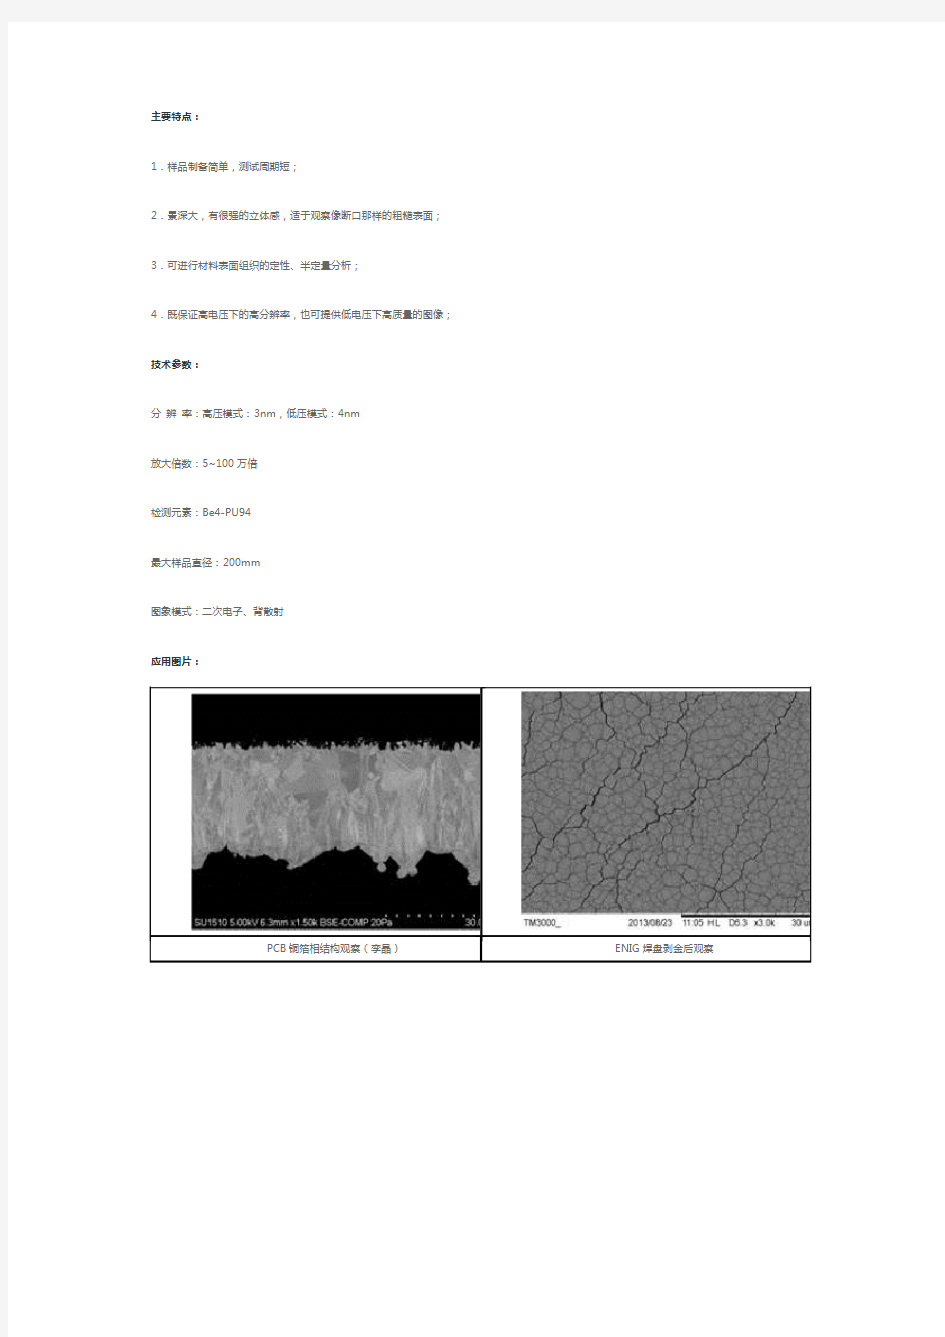 扫描电子显微镜X射线能谱仪(SEMEDS)